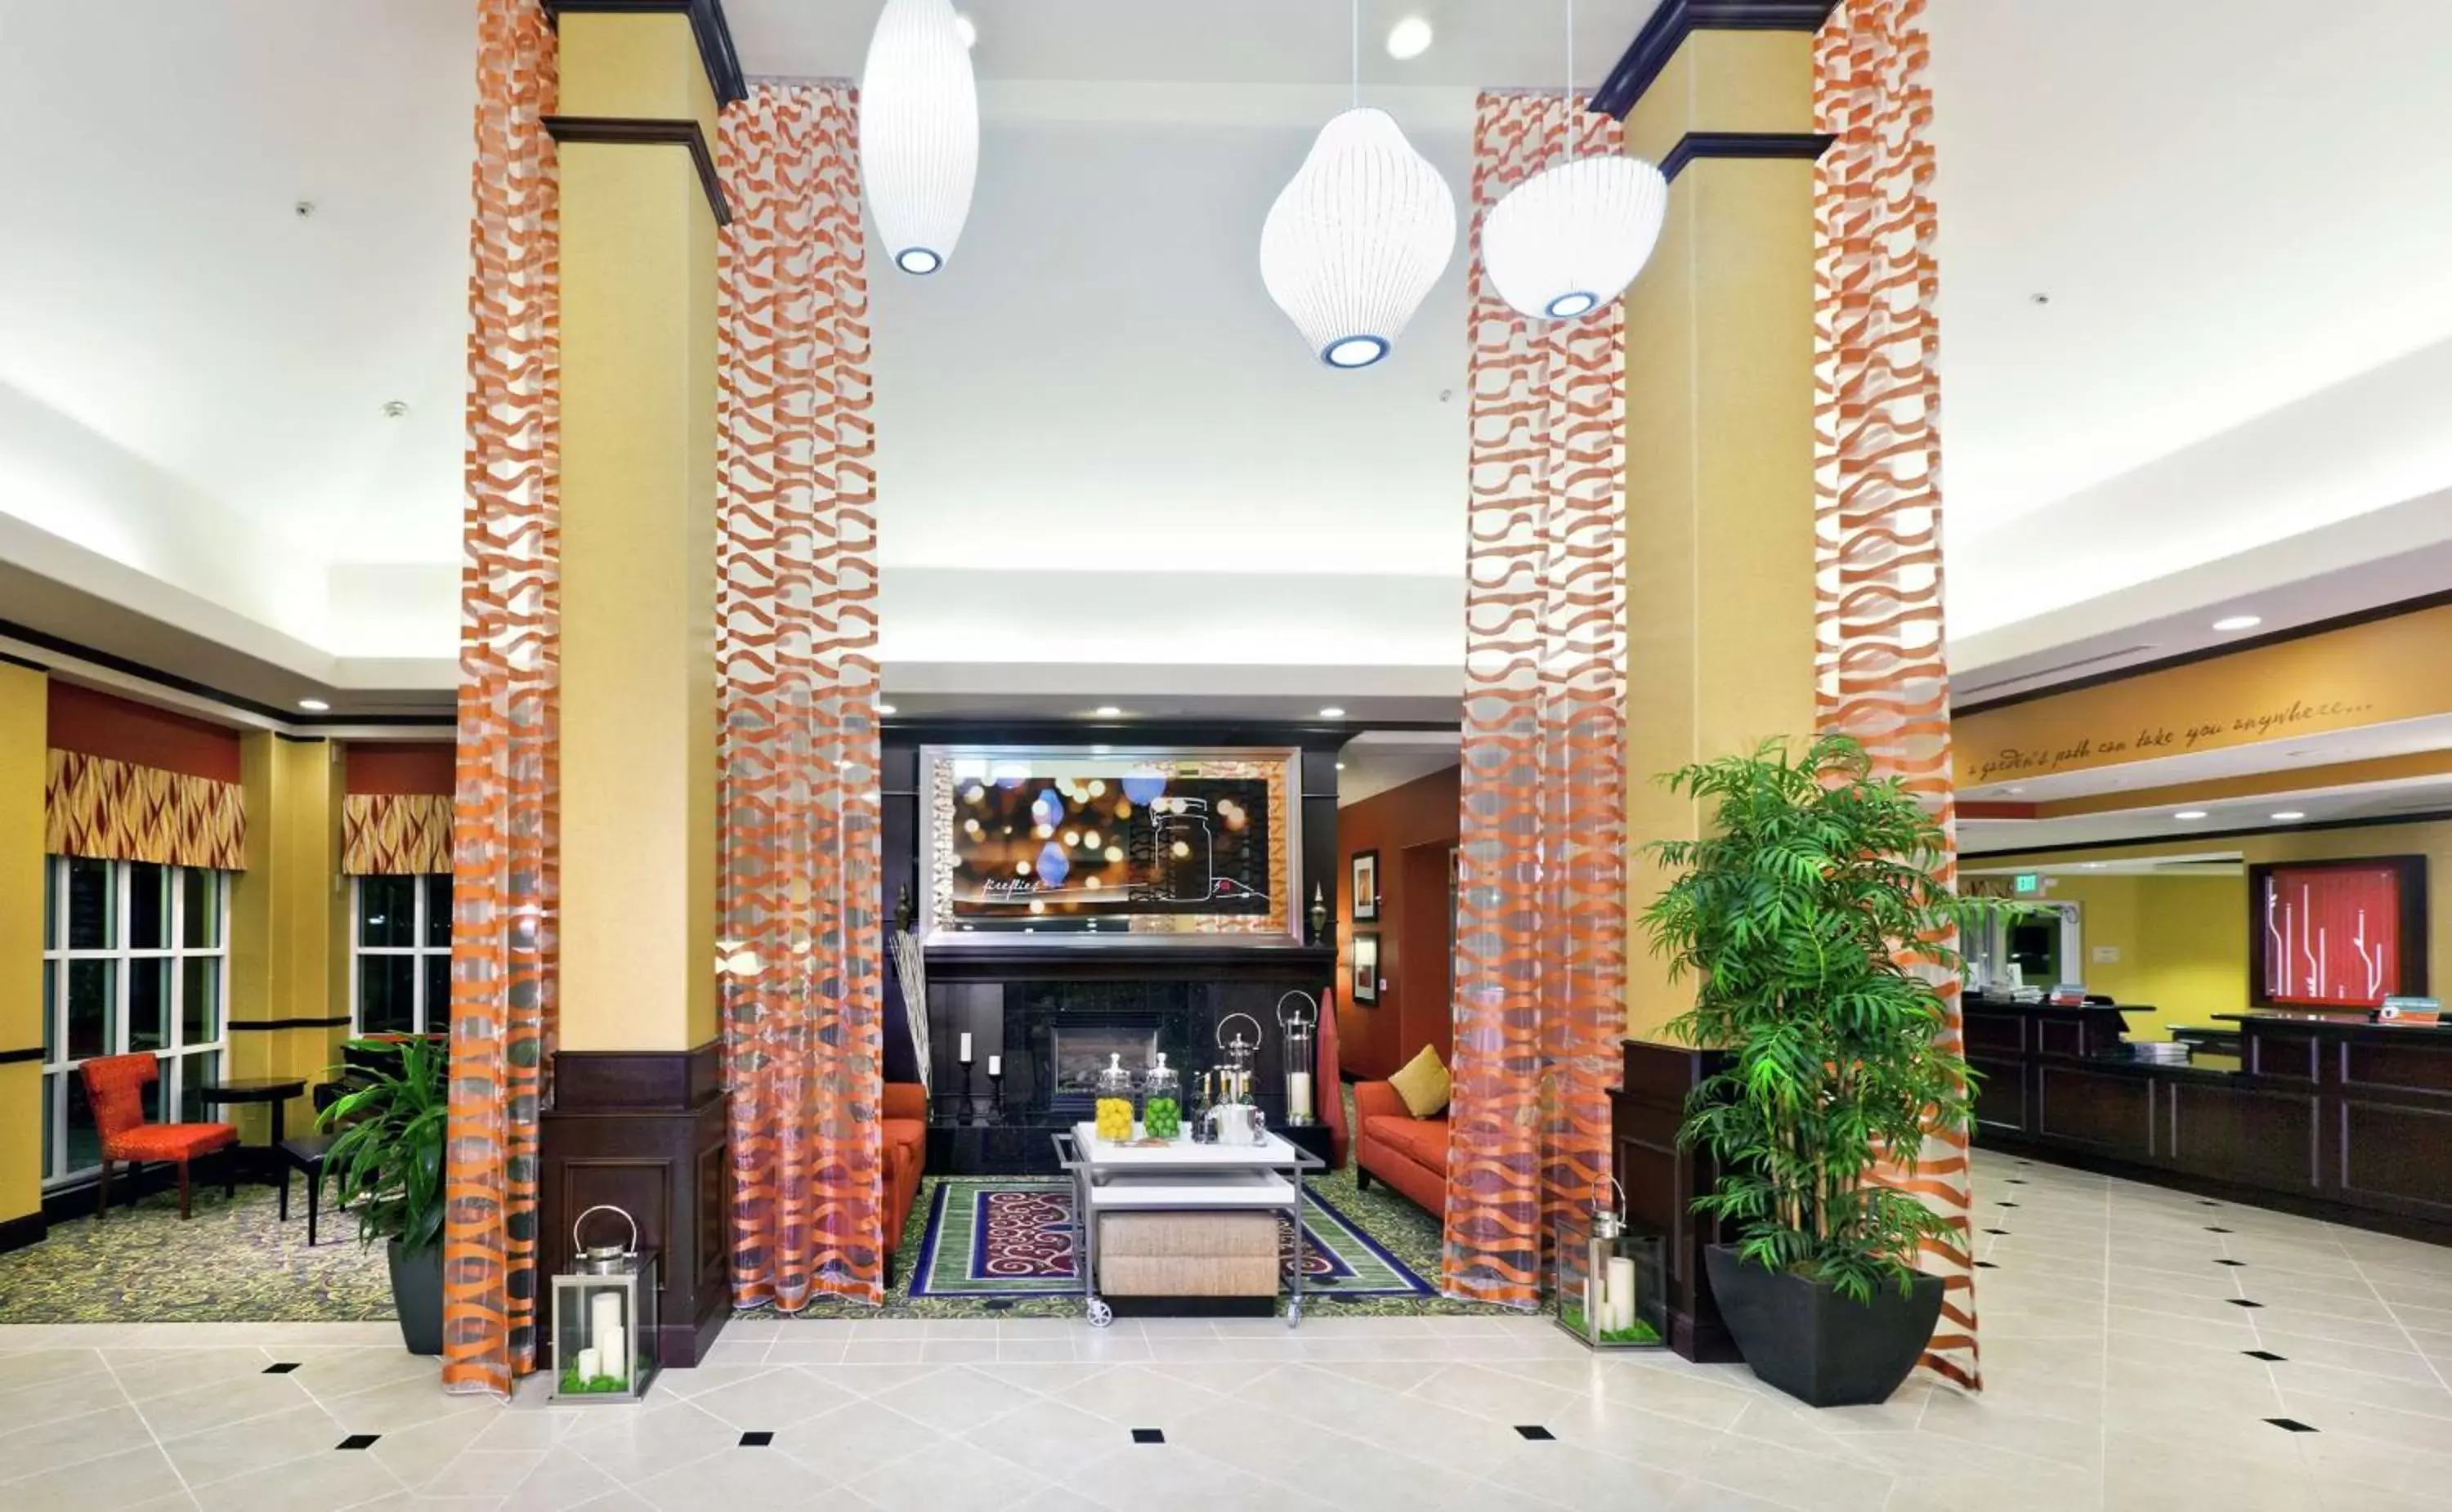 Lobby or reception, Lobby/Reception in Hilton Garden Inn Fontana